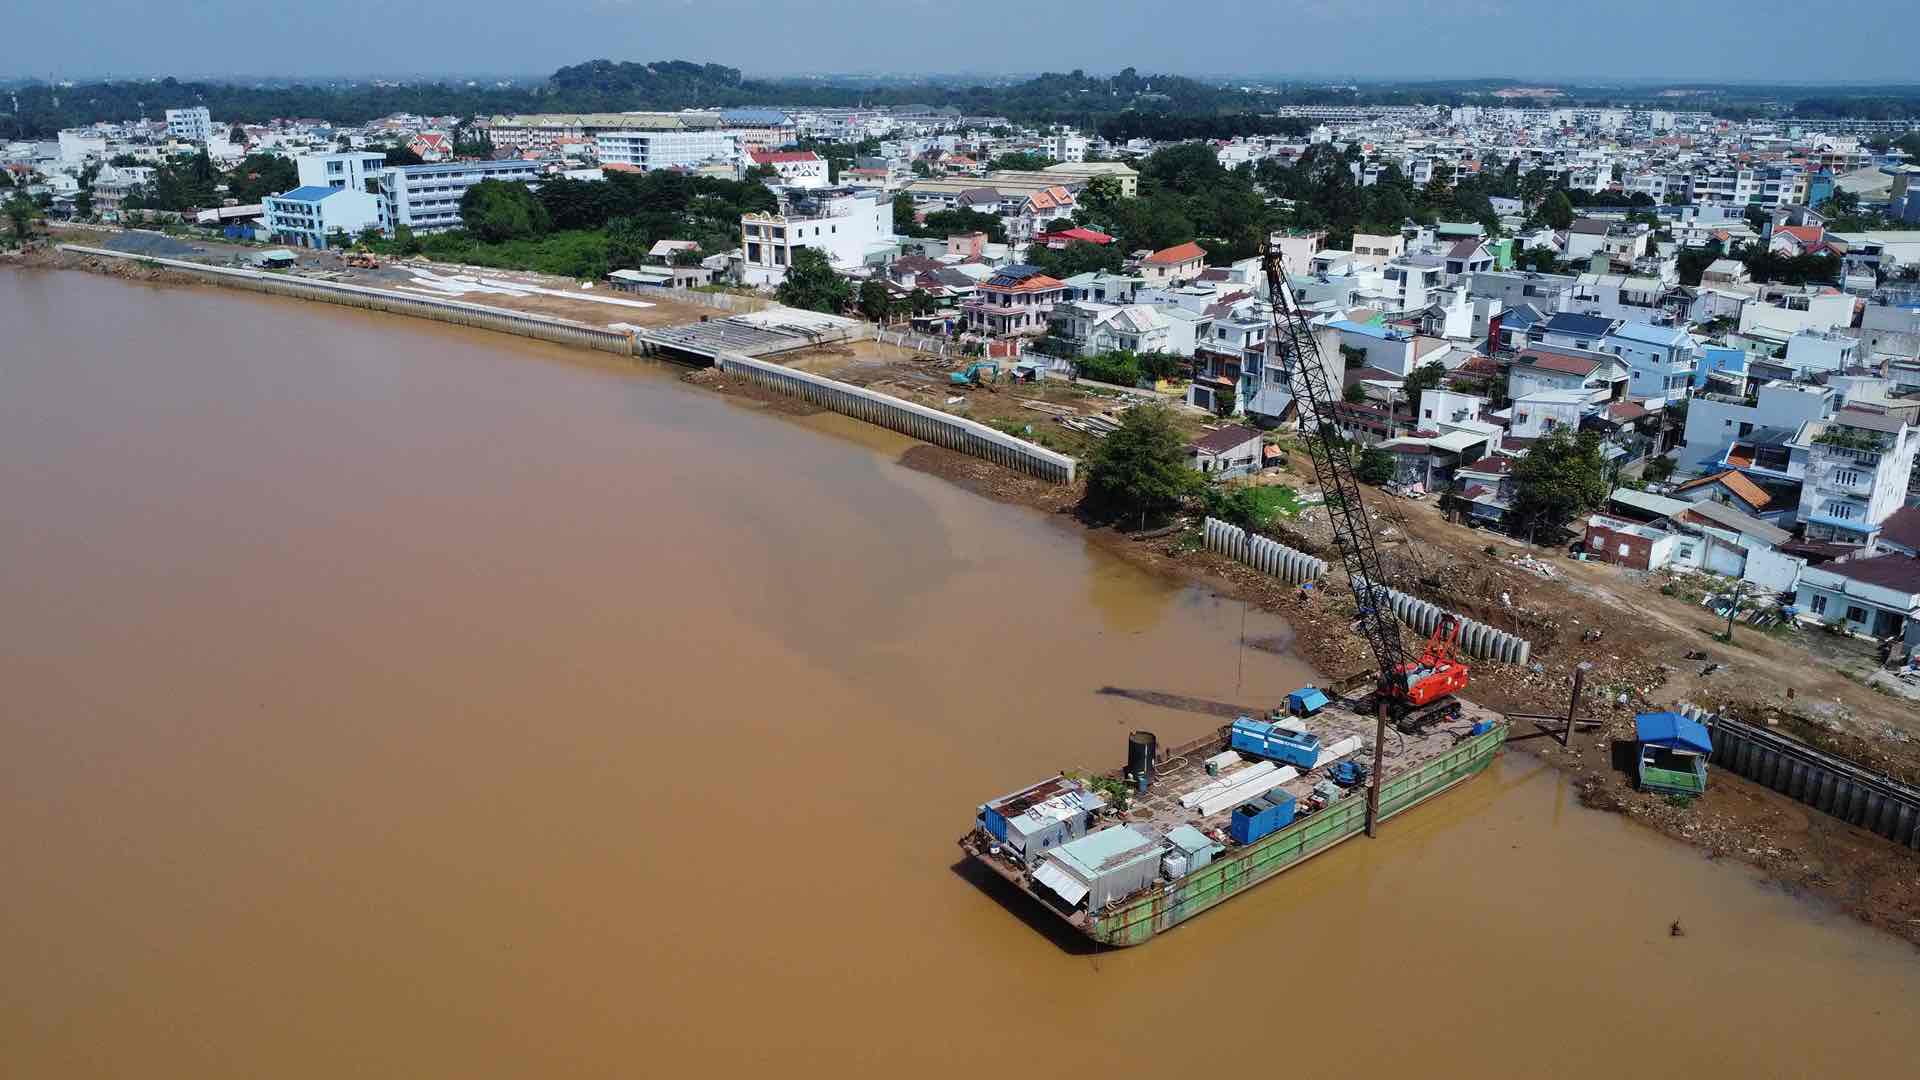 Dự án đầu tư xây dựng đường ven sông Đồng Nai đoạn từ cầu Hóa An đến giáp ranh huyện Vĩnh Cửu dài hơn 5 km là công trình trọng điểm của TP Biên Hòa, có tổng mức đầu tư hơn 1.339 tỉ đồng, đã được khởi công từ cuối tháng 12.2021.